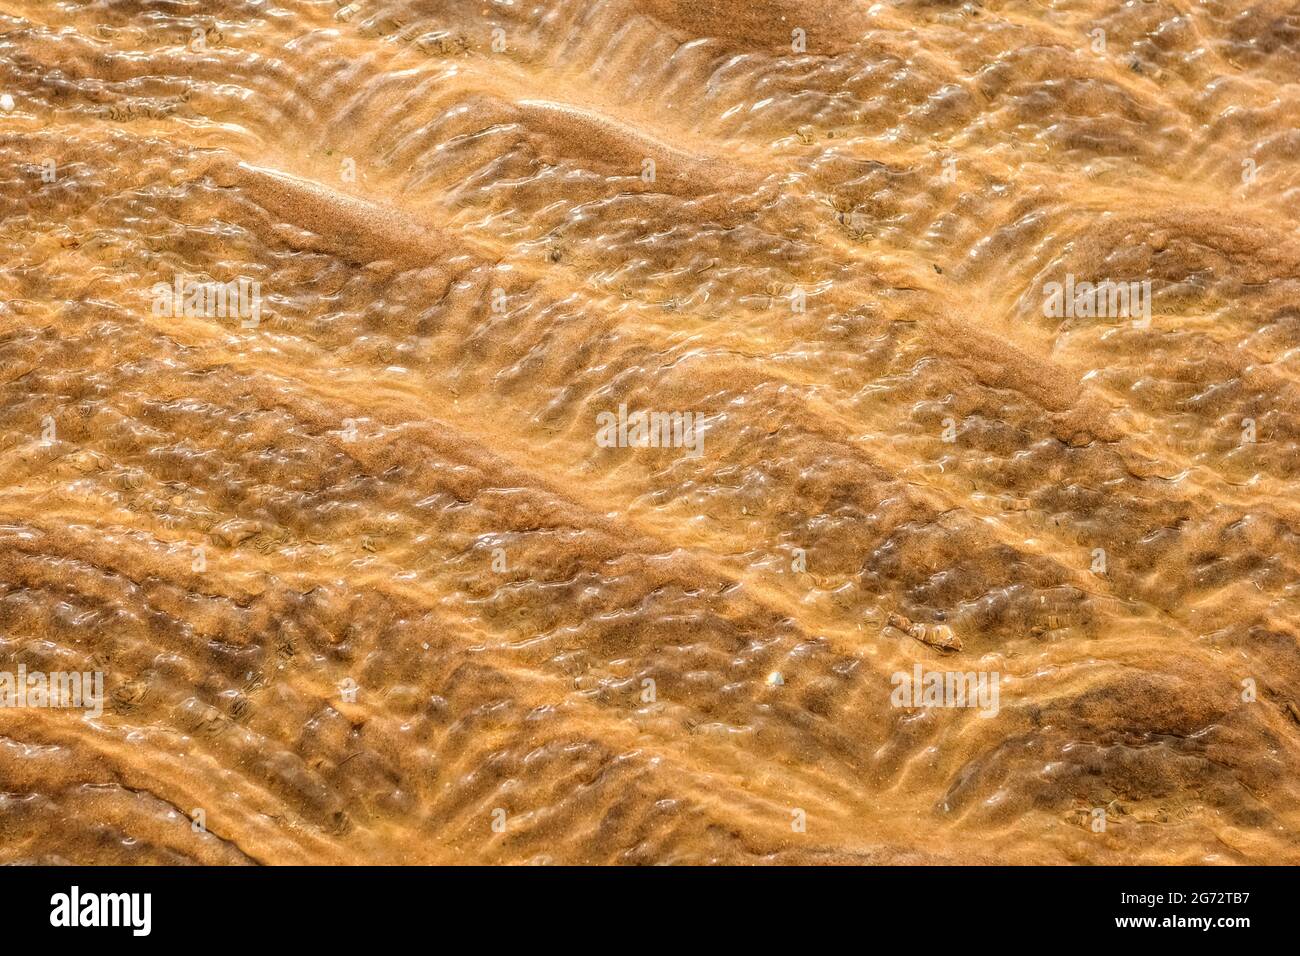 Golden sand ripple patterns Stock Photo